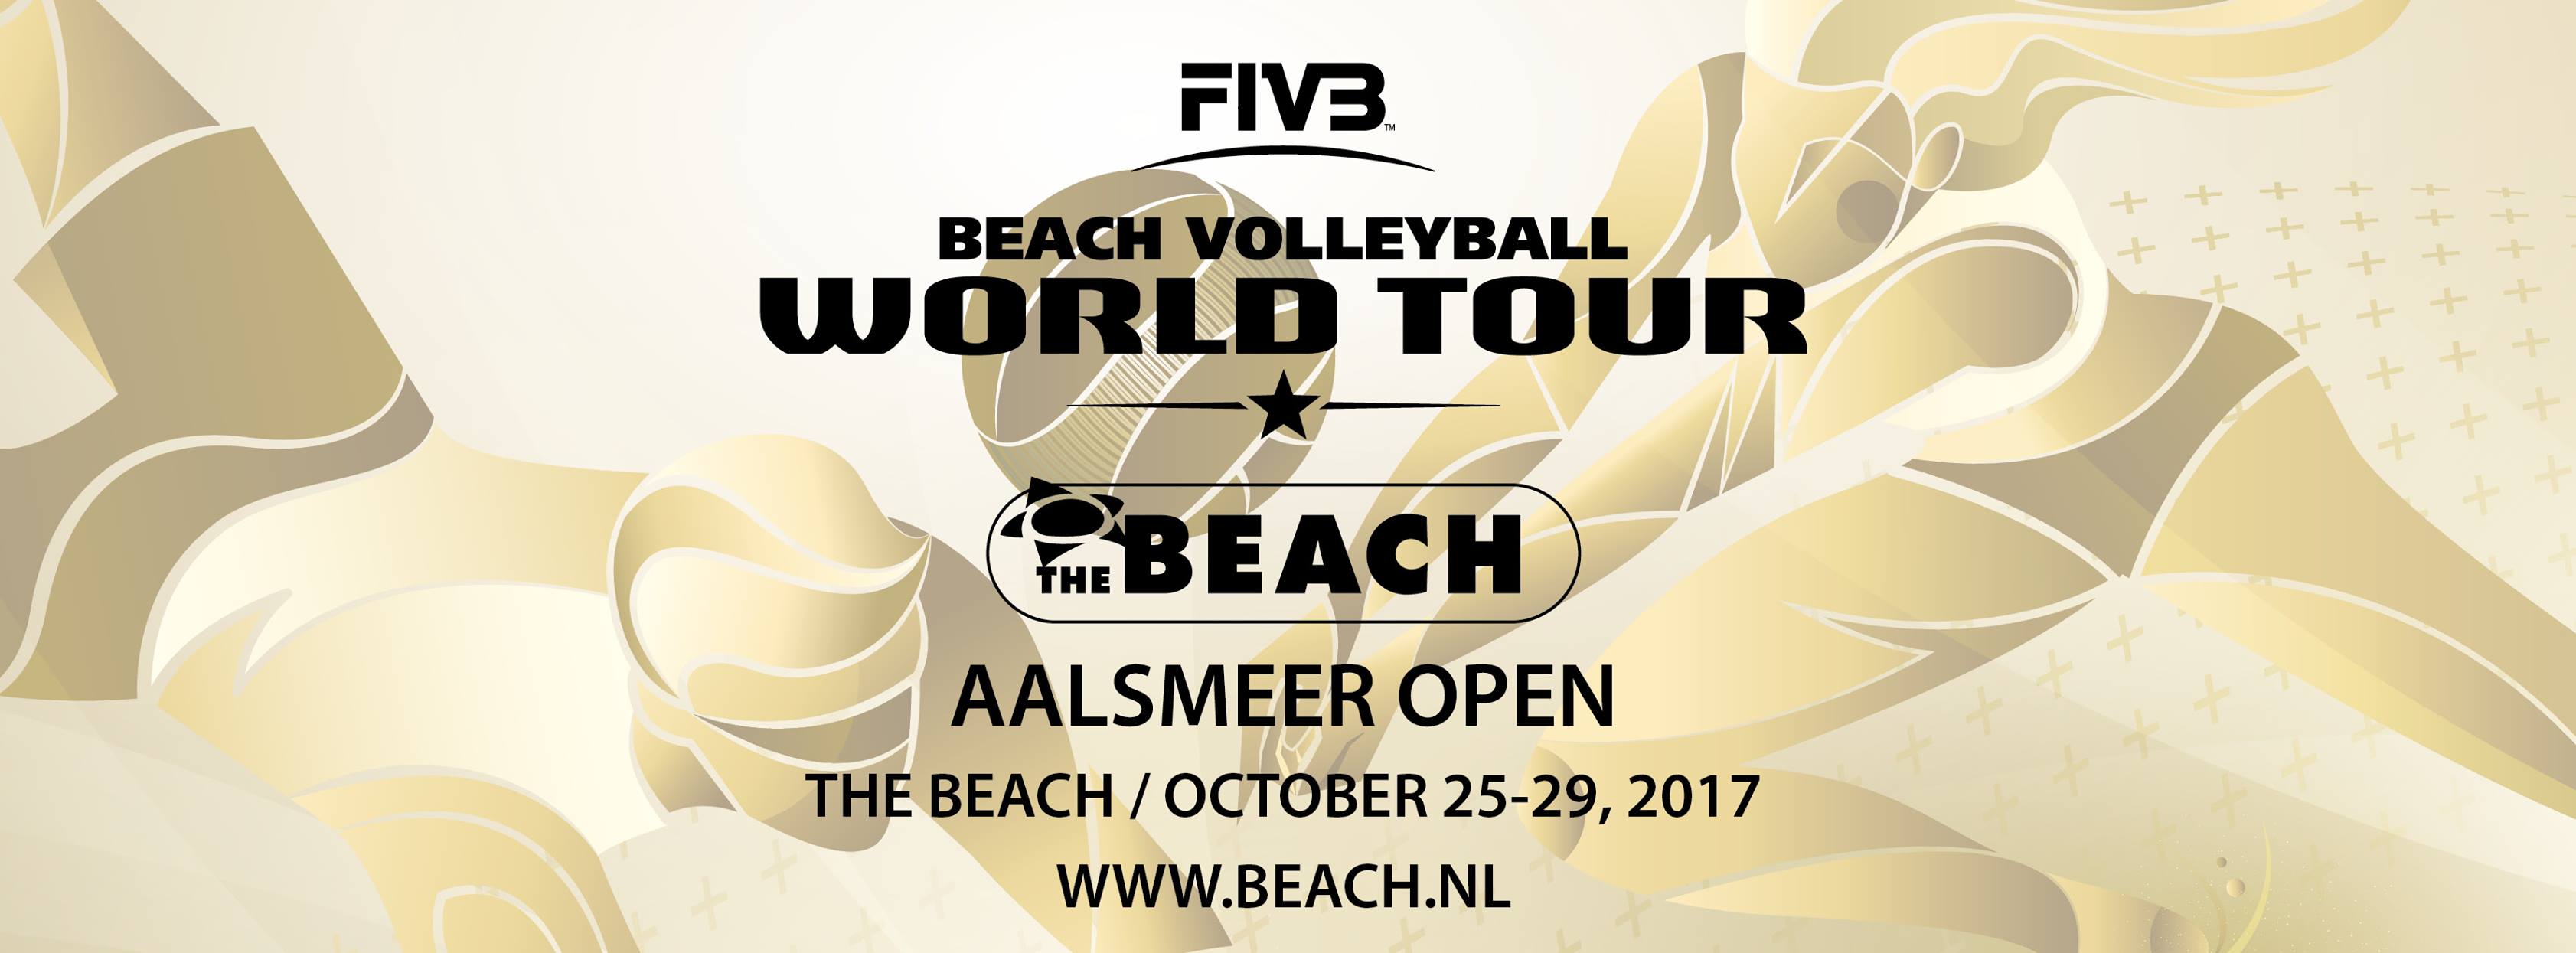 FIVB Beach Volleyball World Tour Aalsmeer